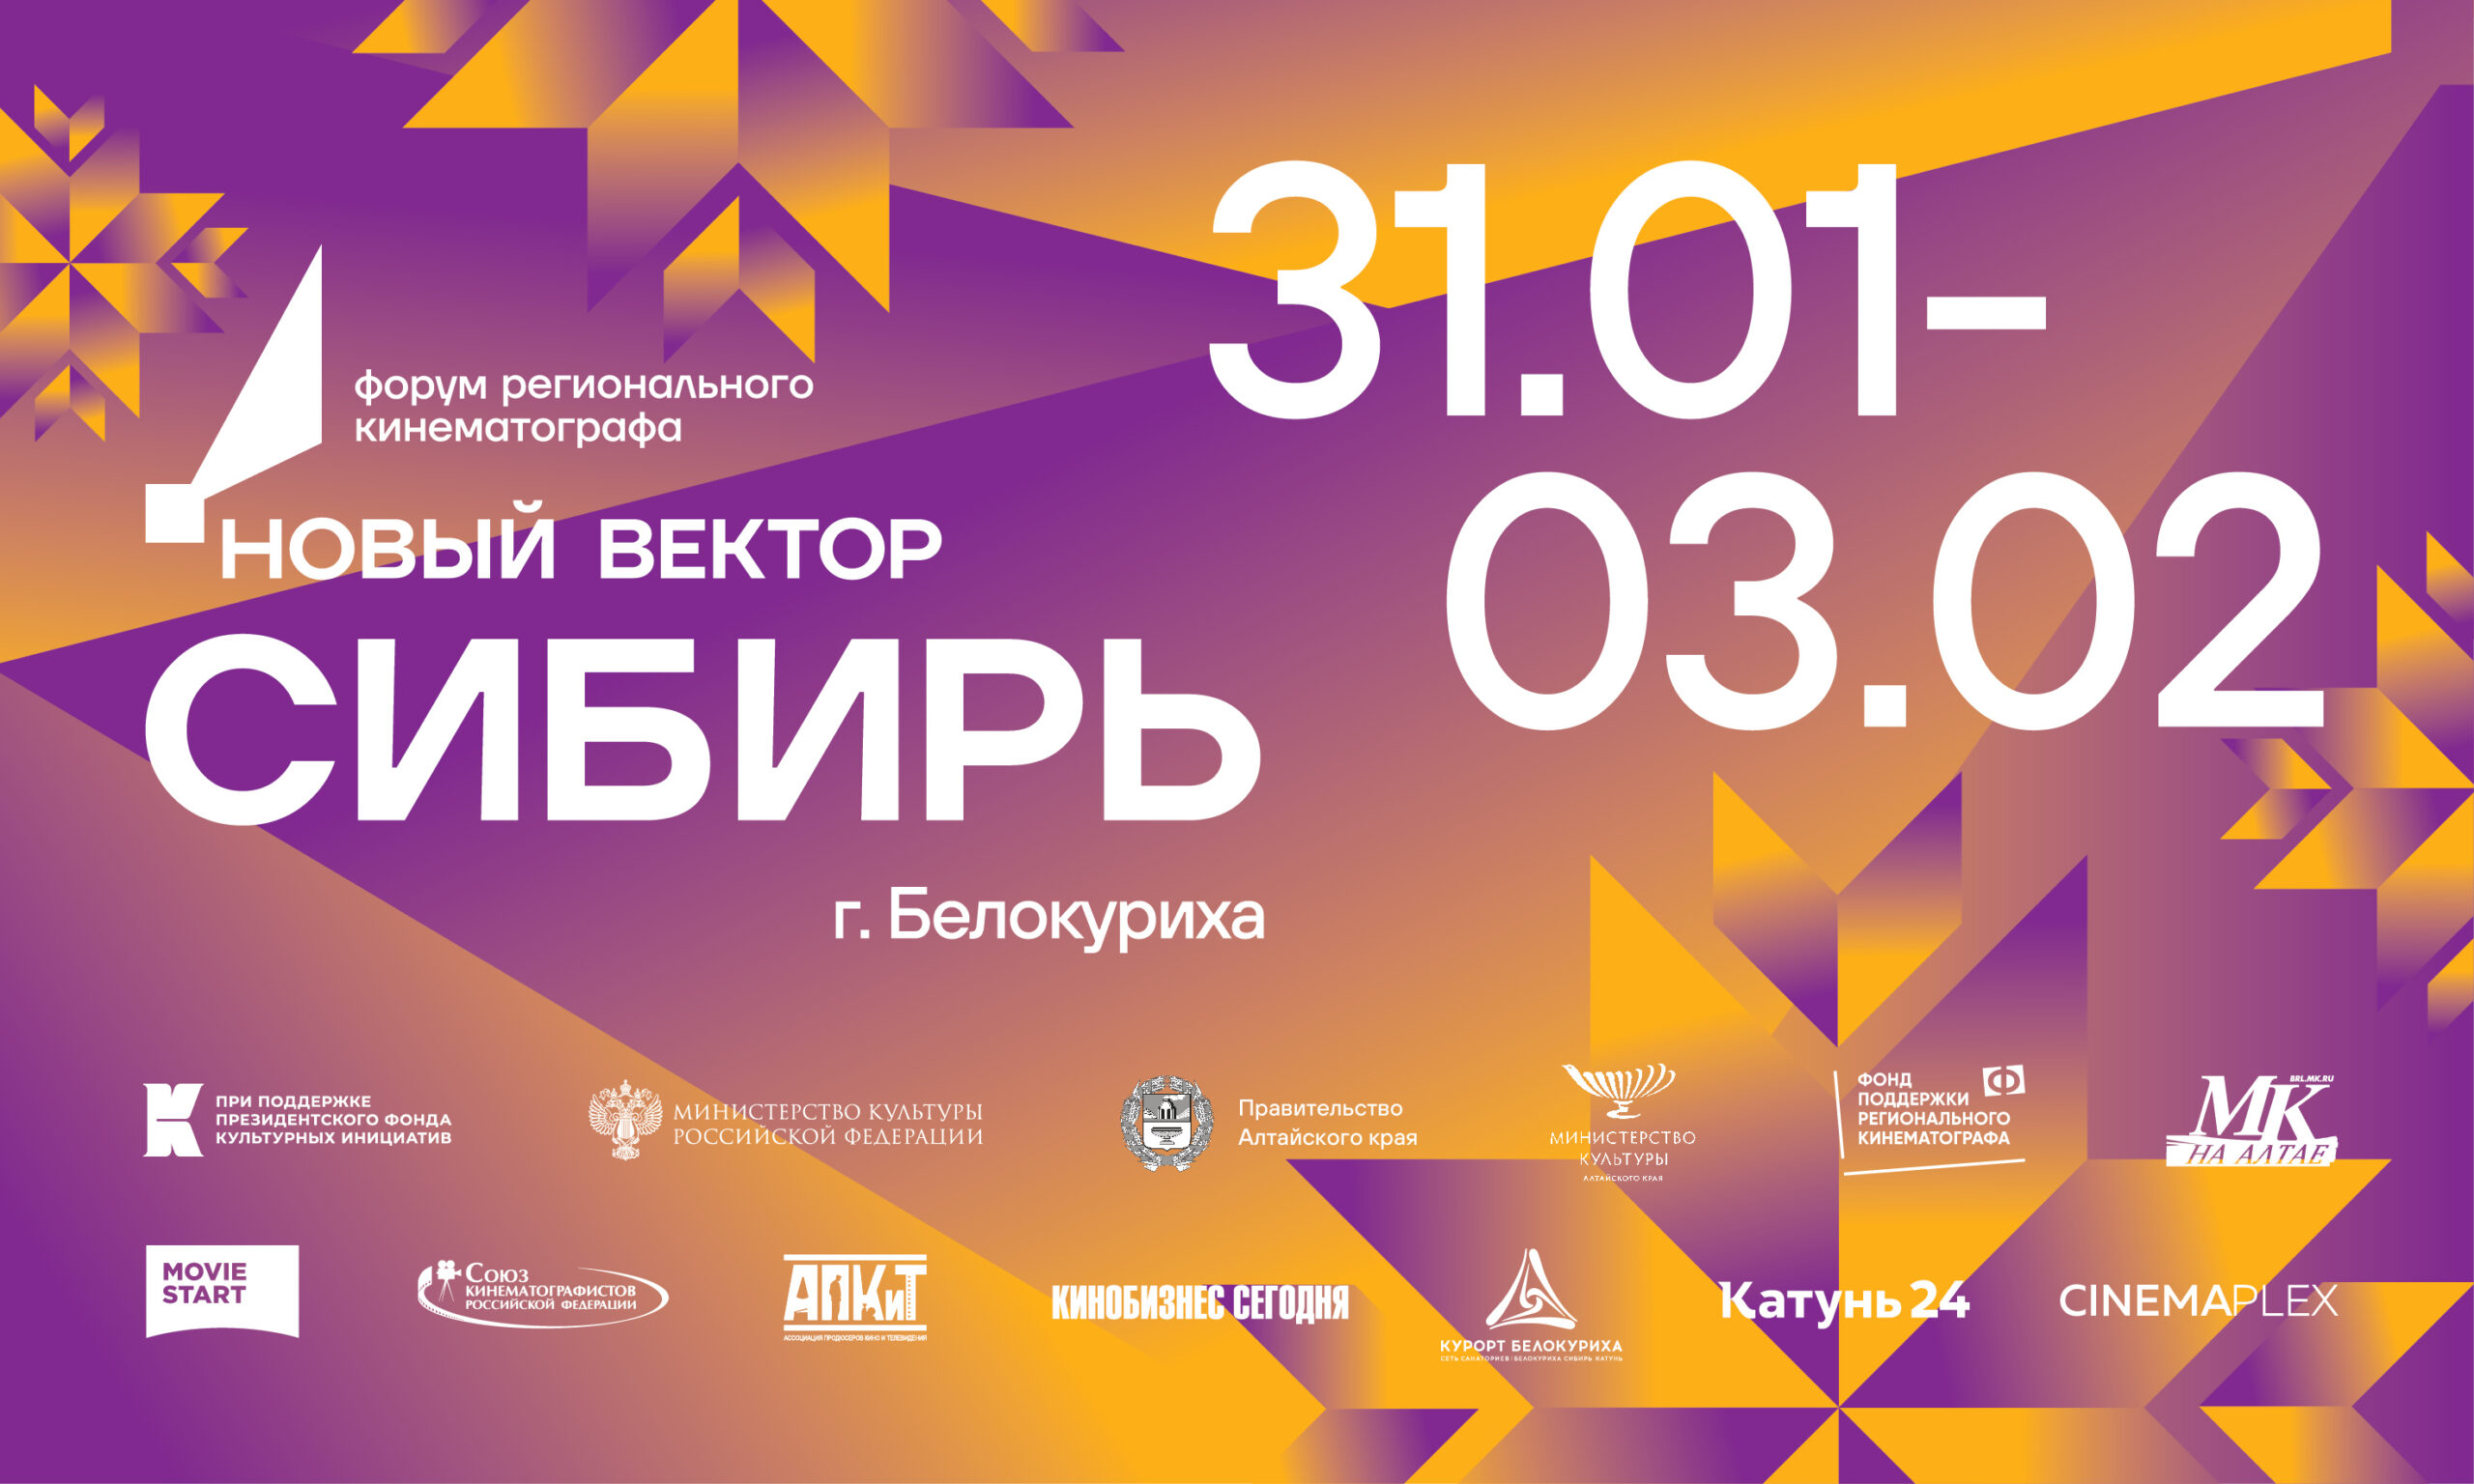 Сегодня в Белокурихе начал работу форум регионального кинематографа «Новый вектор. Сибирь»